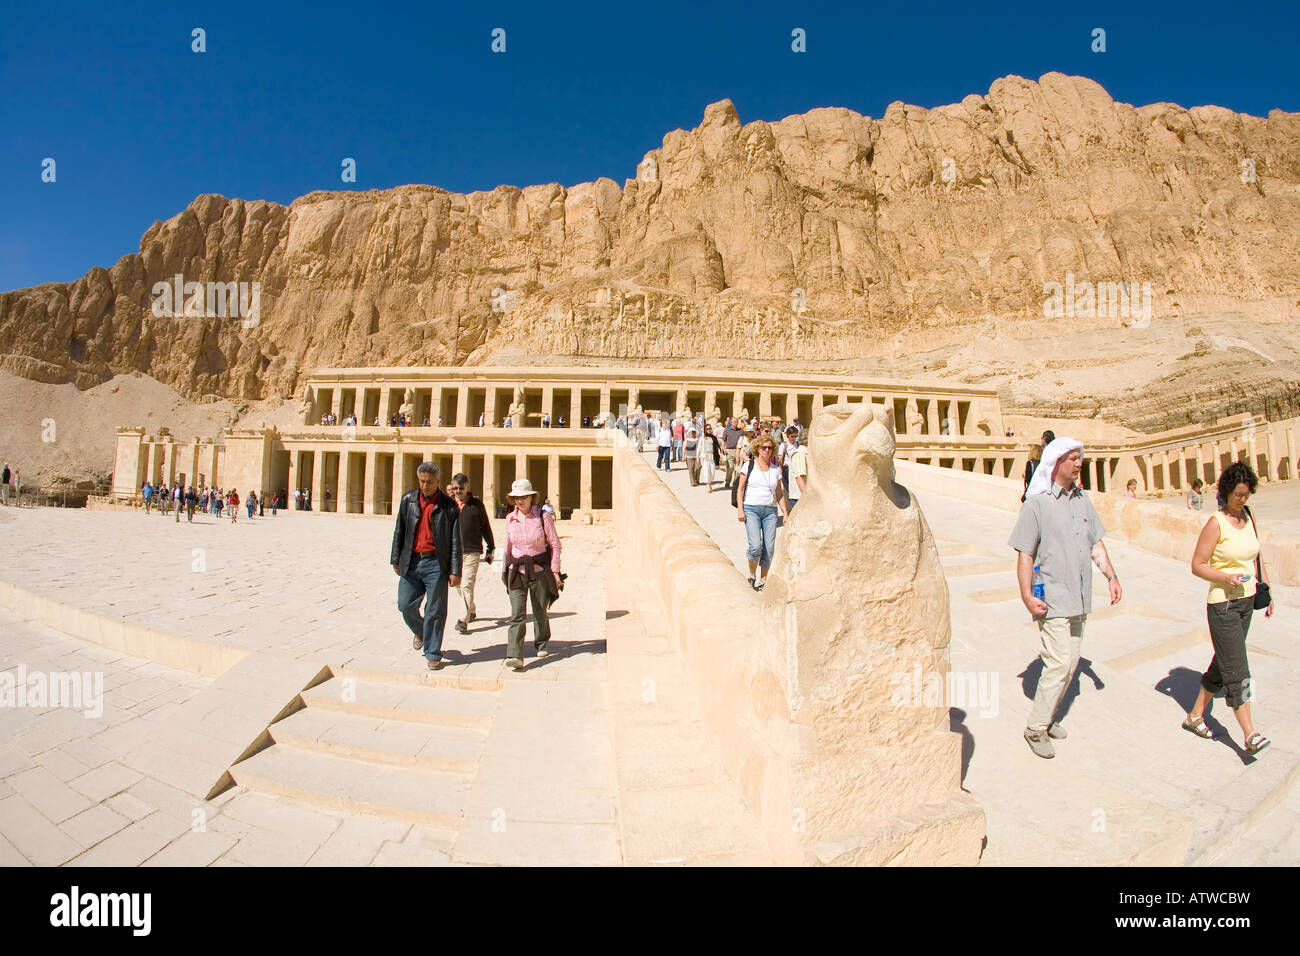 Temple Hatshepsut extérieur avec les touristes et les visiteurs de la rive occidentale du Nil Louxor Egypte Afrique du Nord Banque D'Images